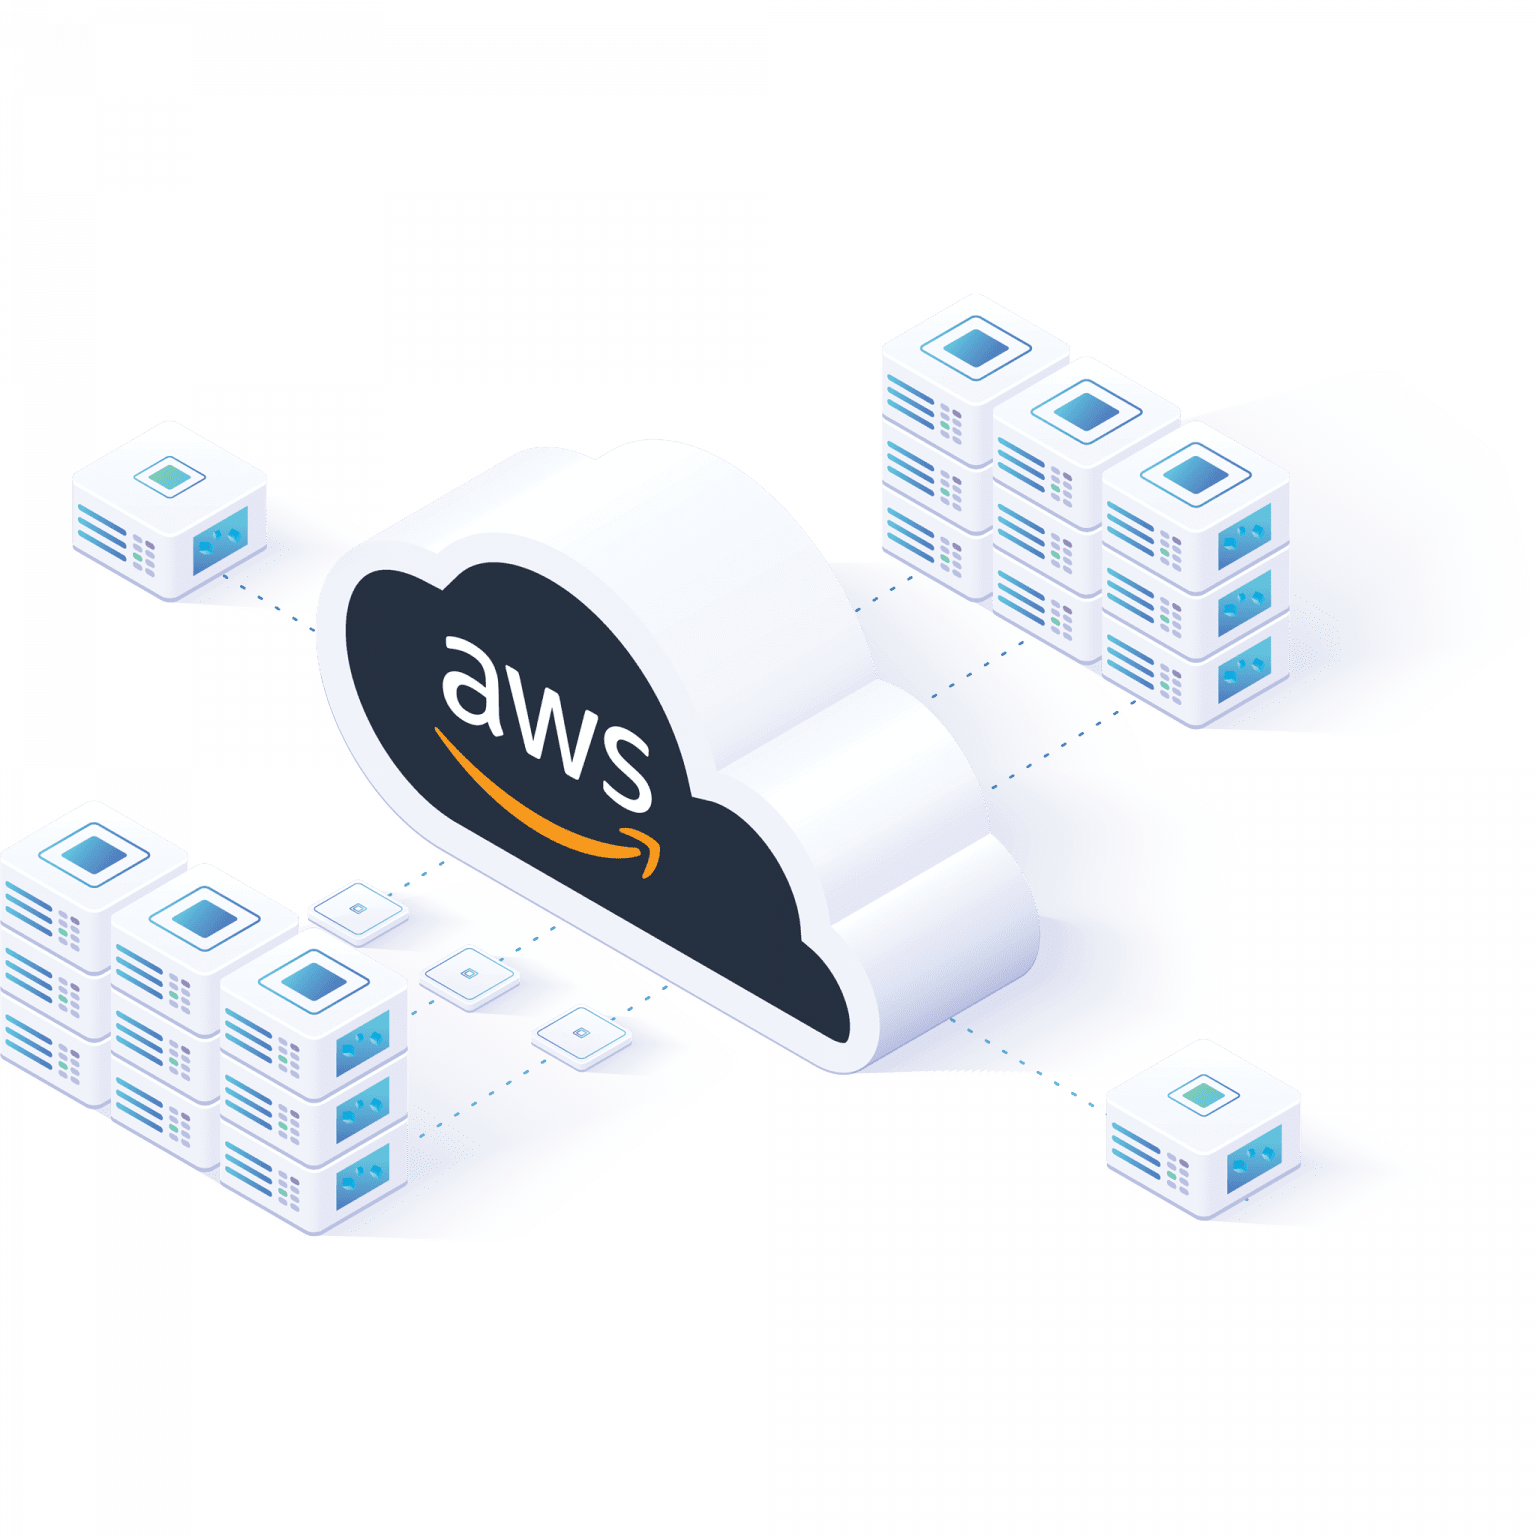 Louisville AWS Cloud Development